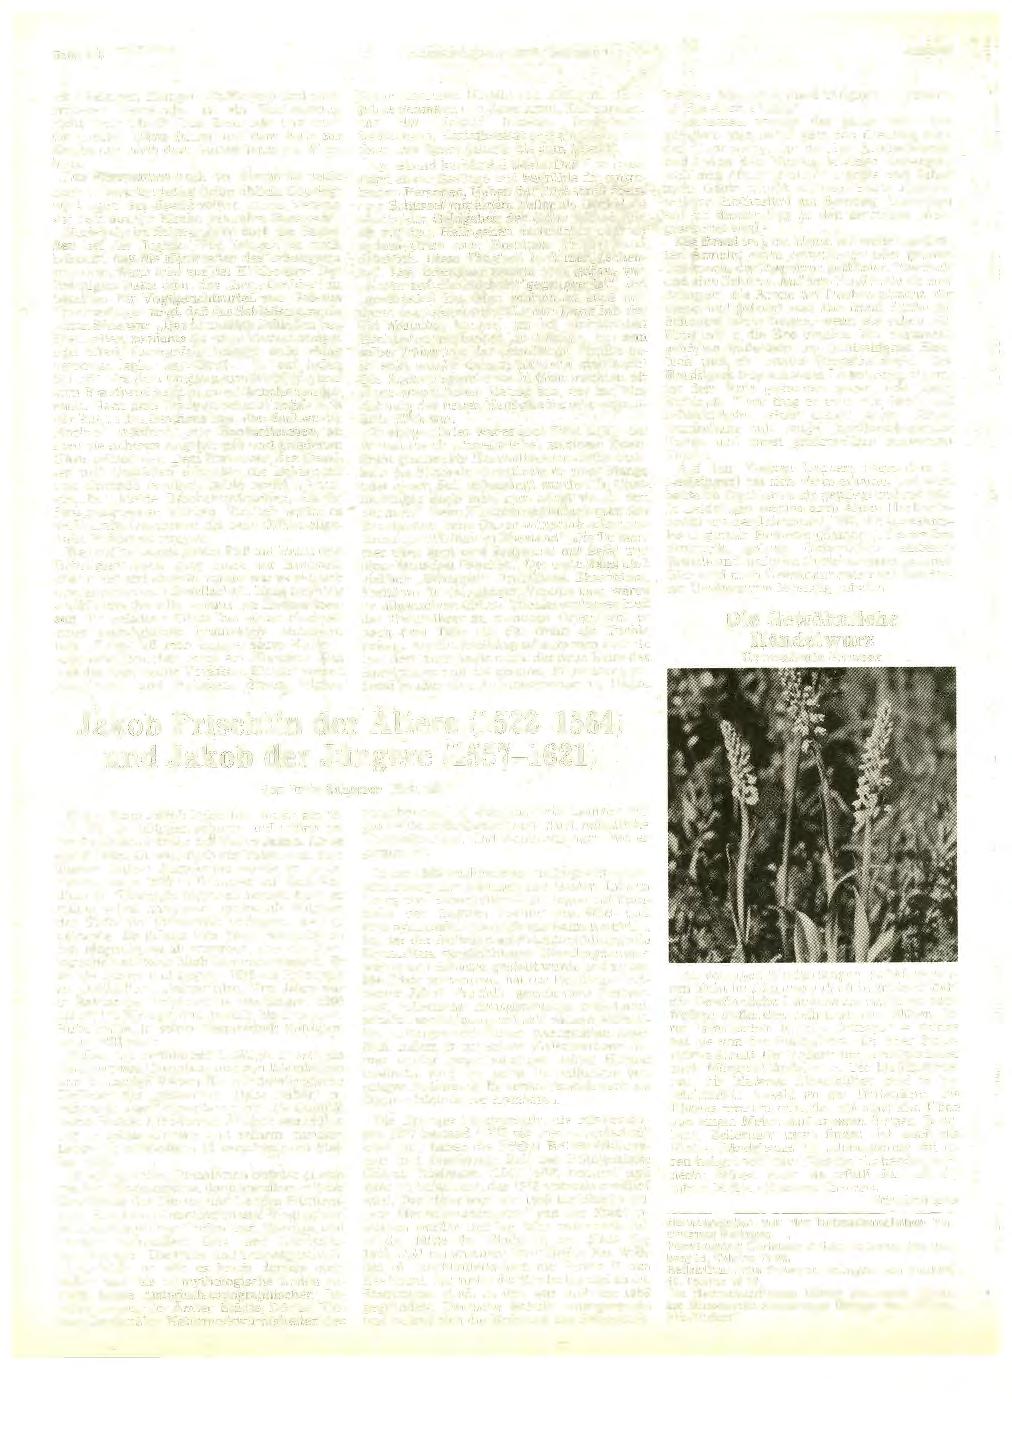 Seite 412 Heimatkundliehe Blätter Balingen ' JuU'1983 ten (Balingen, Ebingen,.Tailfingen) und auch größeren Gemeinden ist ein Hochzeitszug nicht mehr üblich.